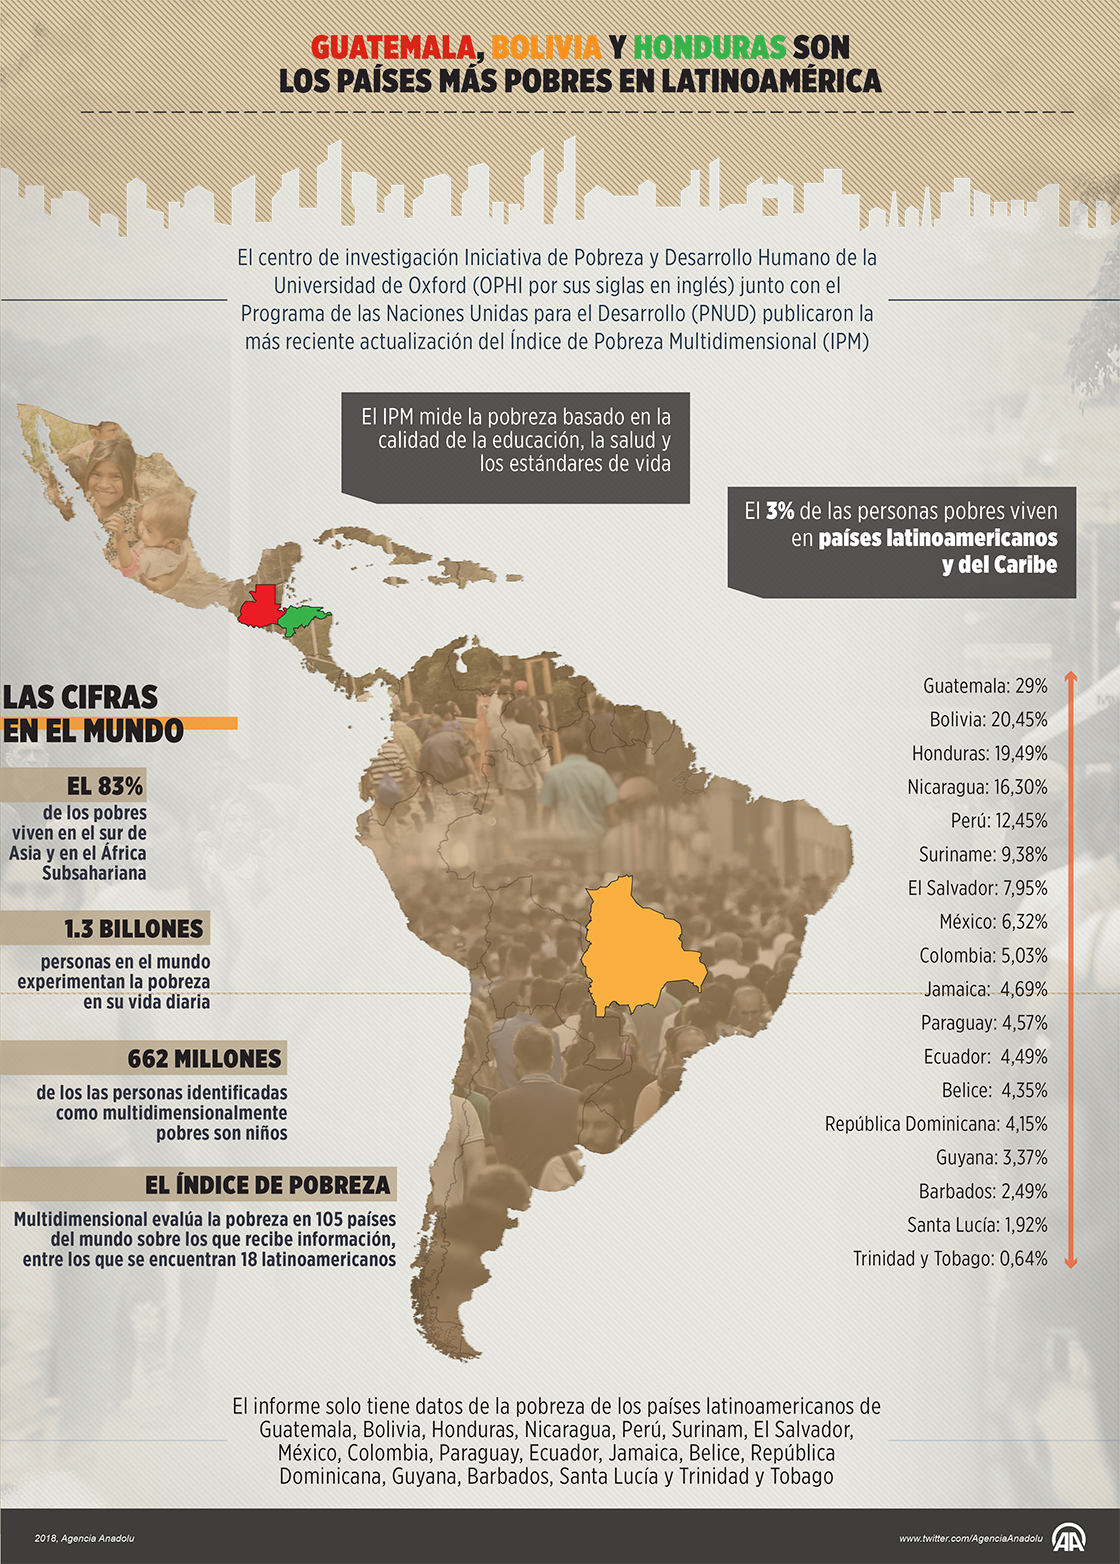 Guatemala, Bolivia y Honduras son los países más pobres en